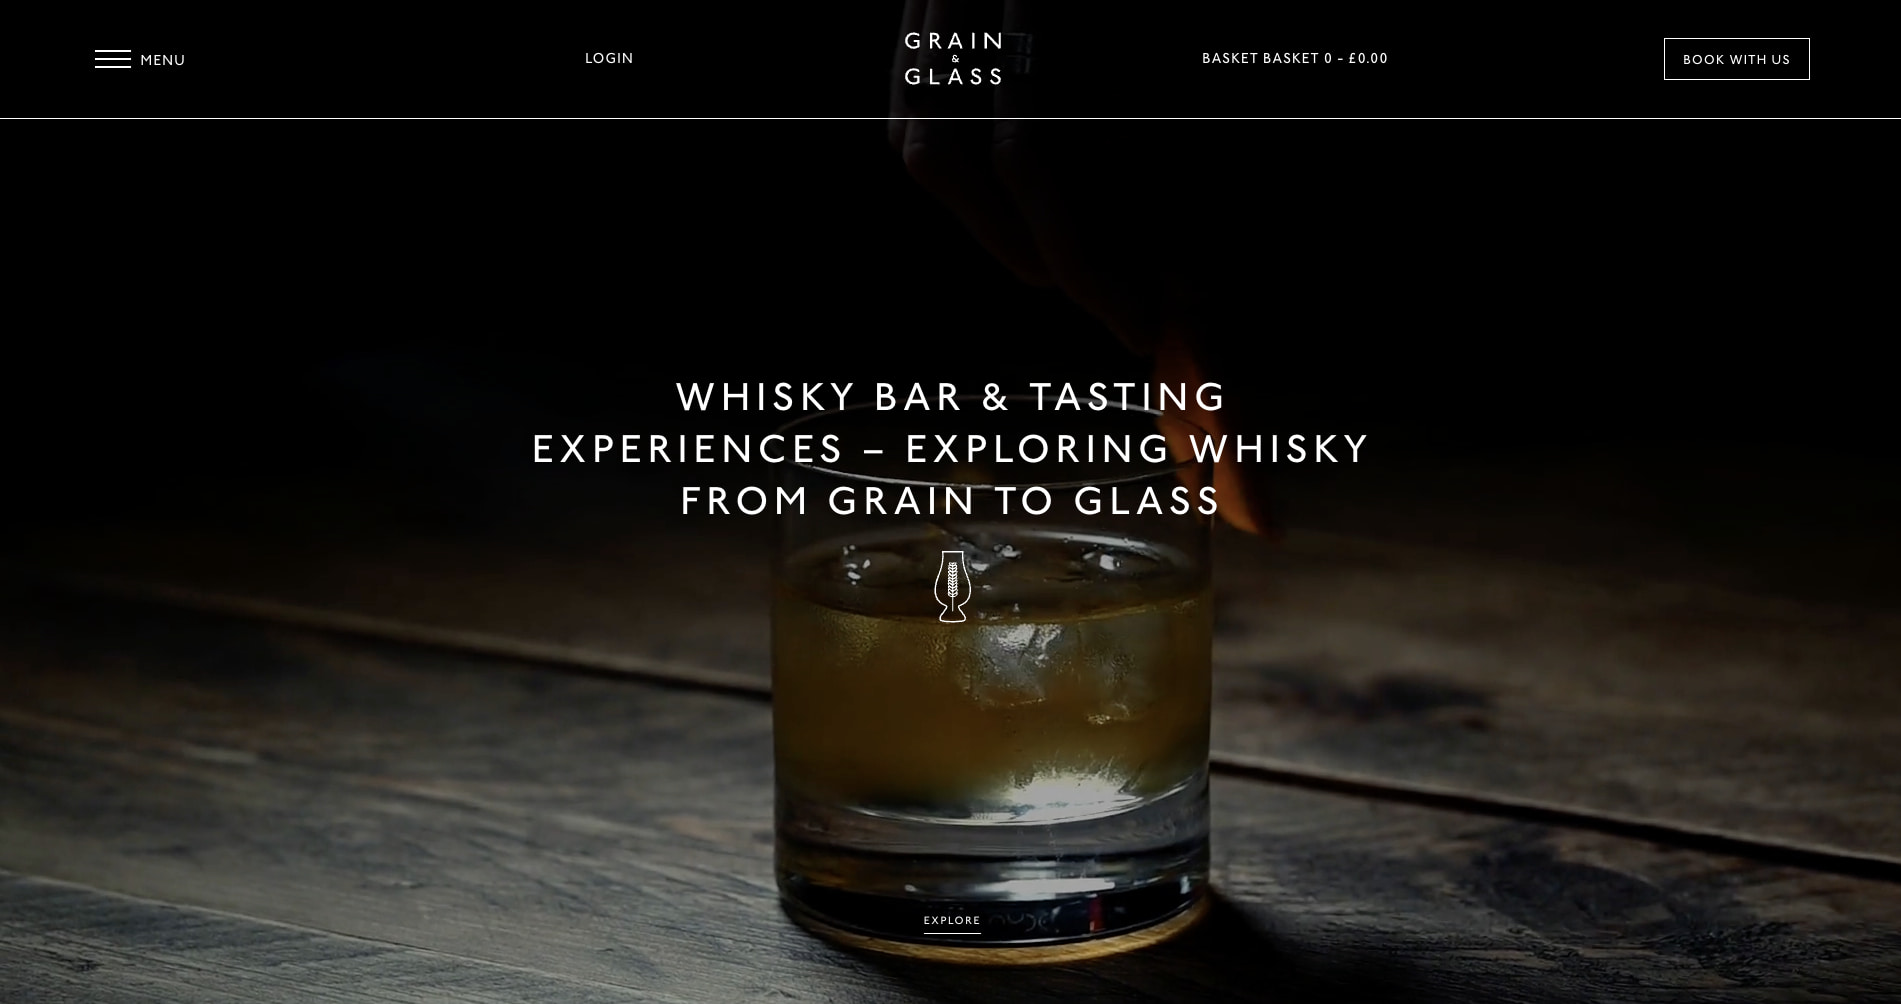 Grain and glass website screenshot